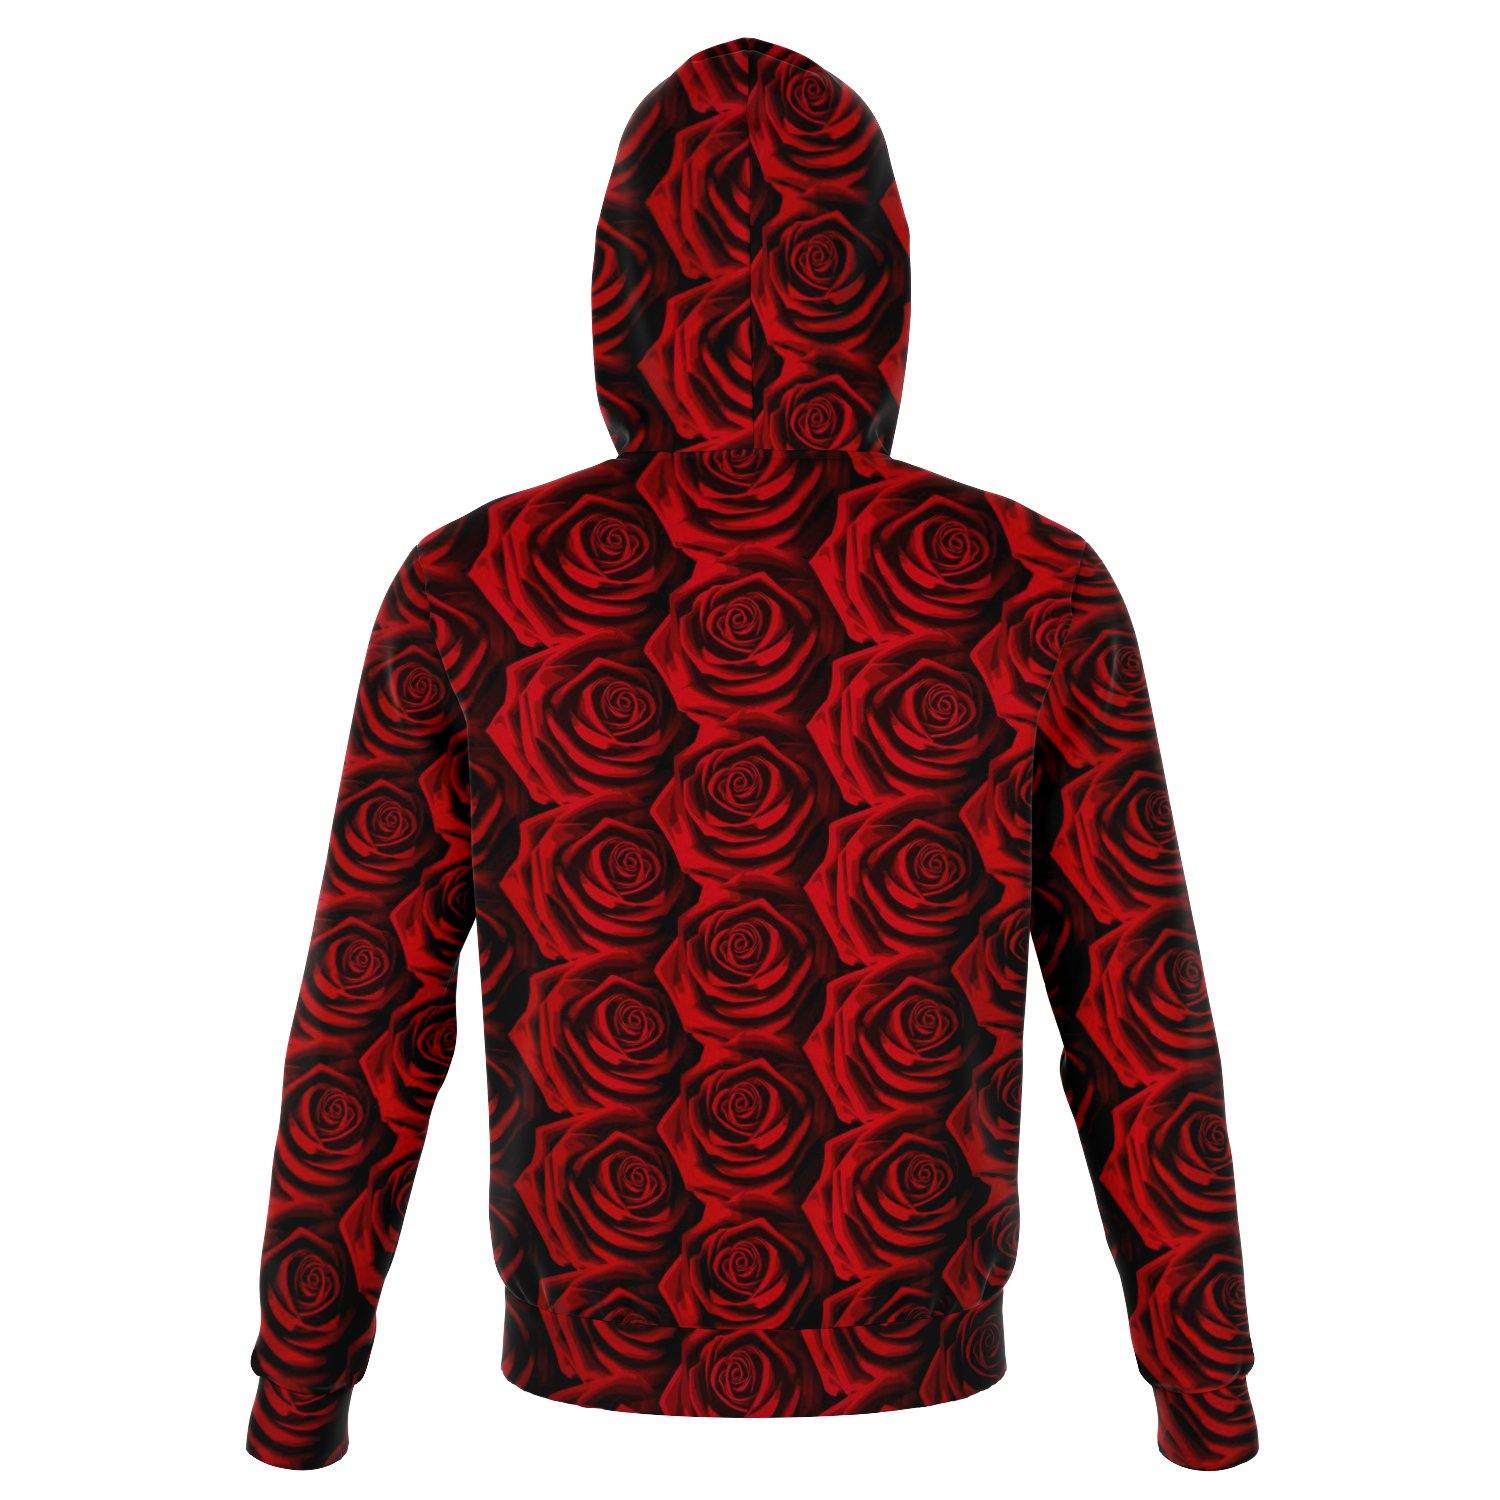 Moody Roses Premium Pullover Hoodie - Manifestie